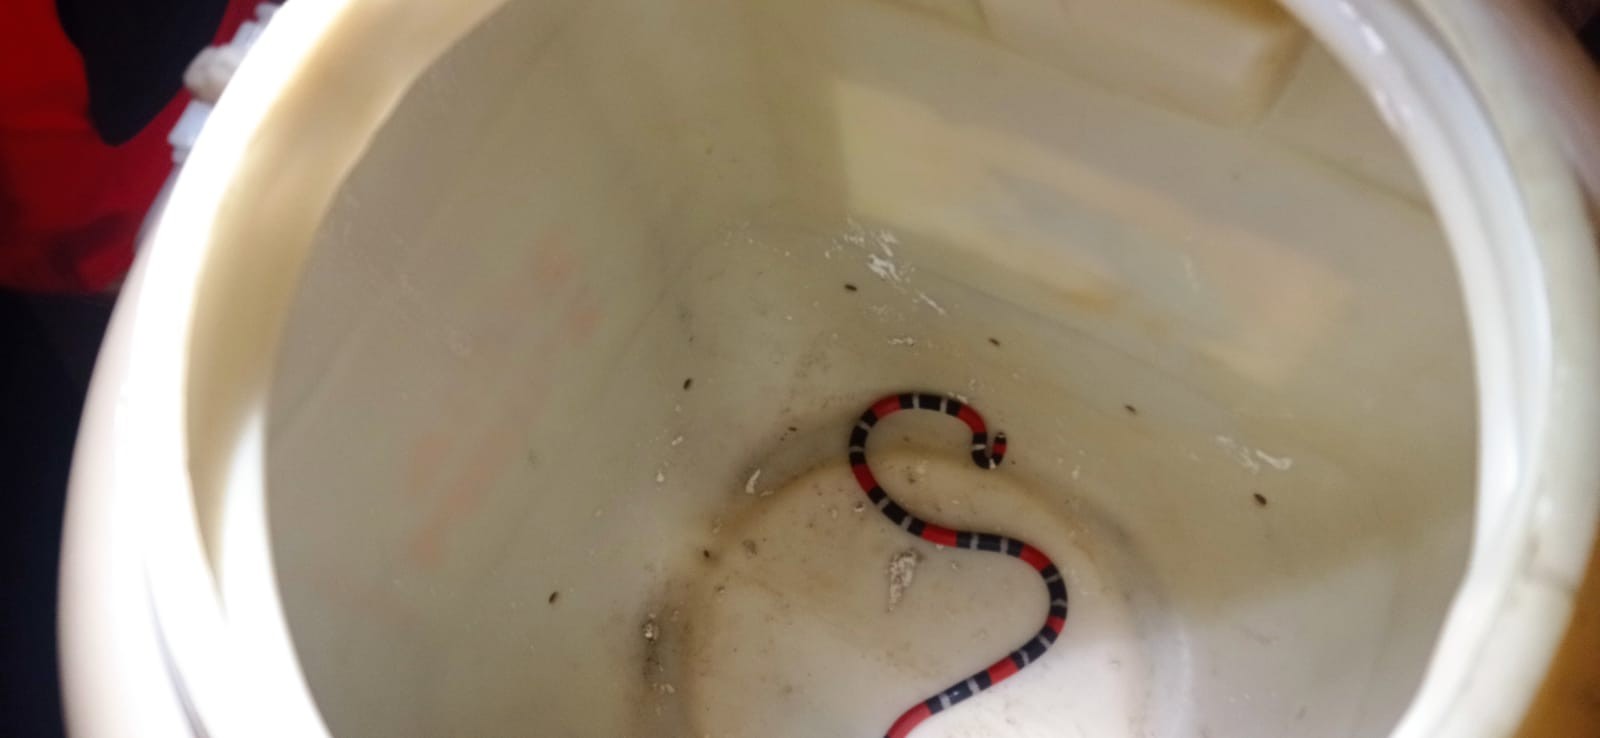 Serpente mais venenosa do Brasil é resgatada em quarto de residência na Grande Fortaleza 